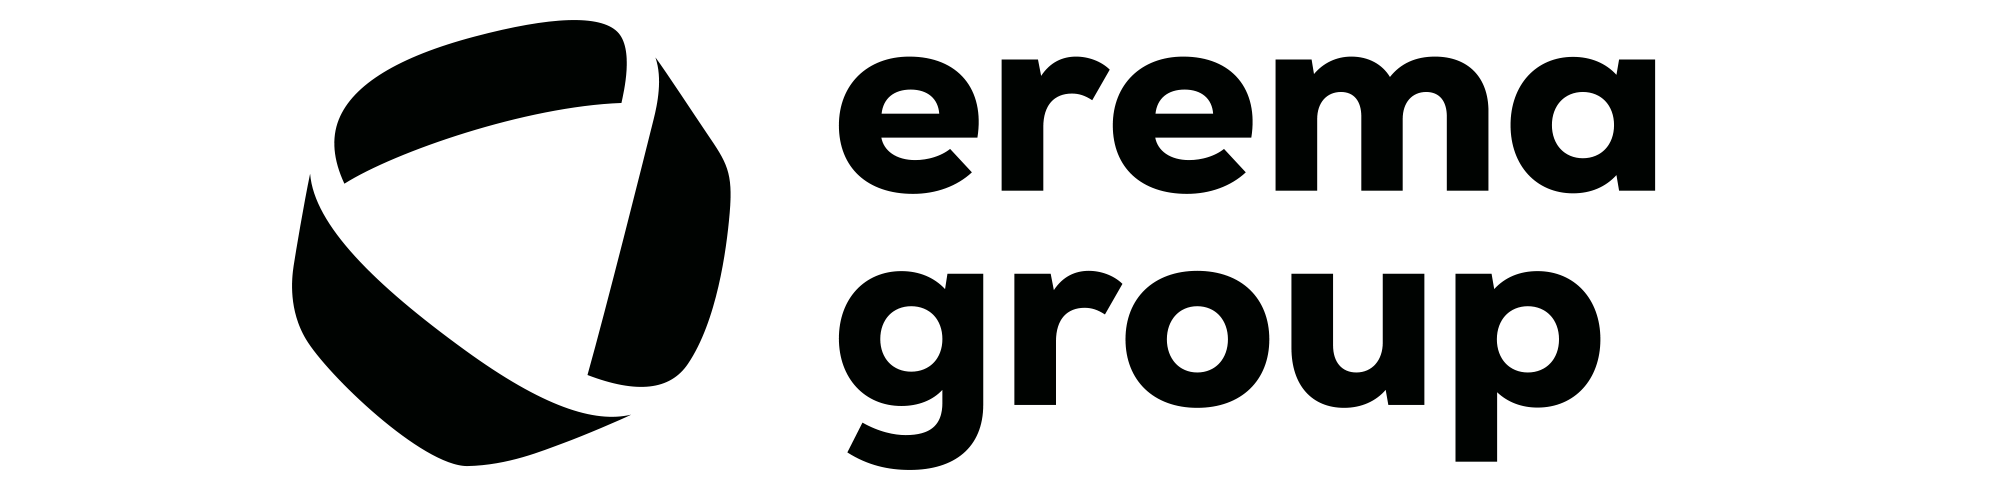 erema group logo schwarz